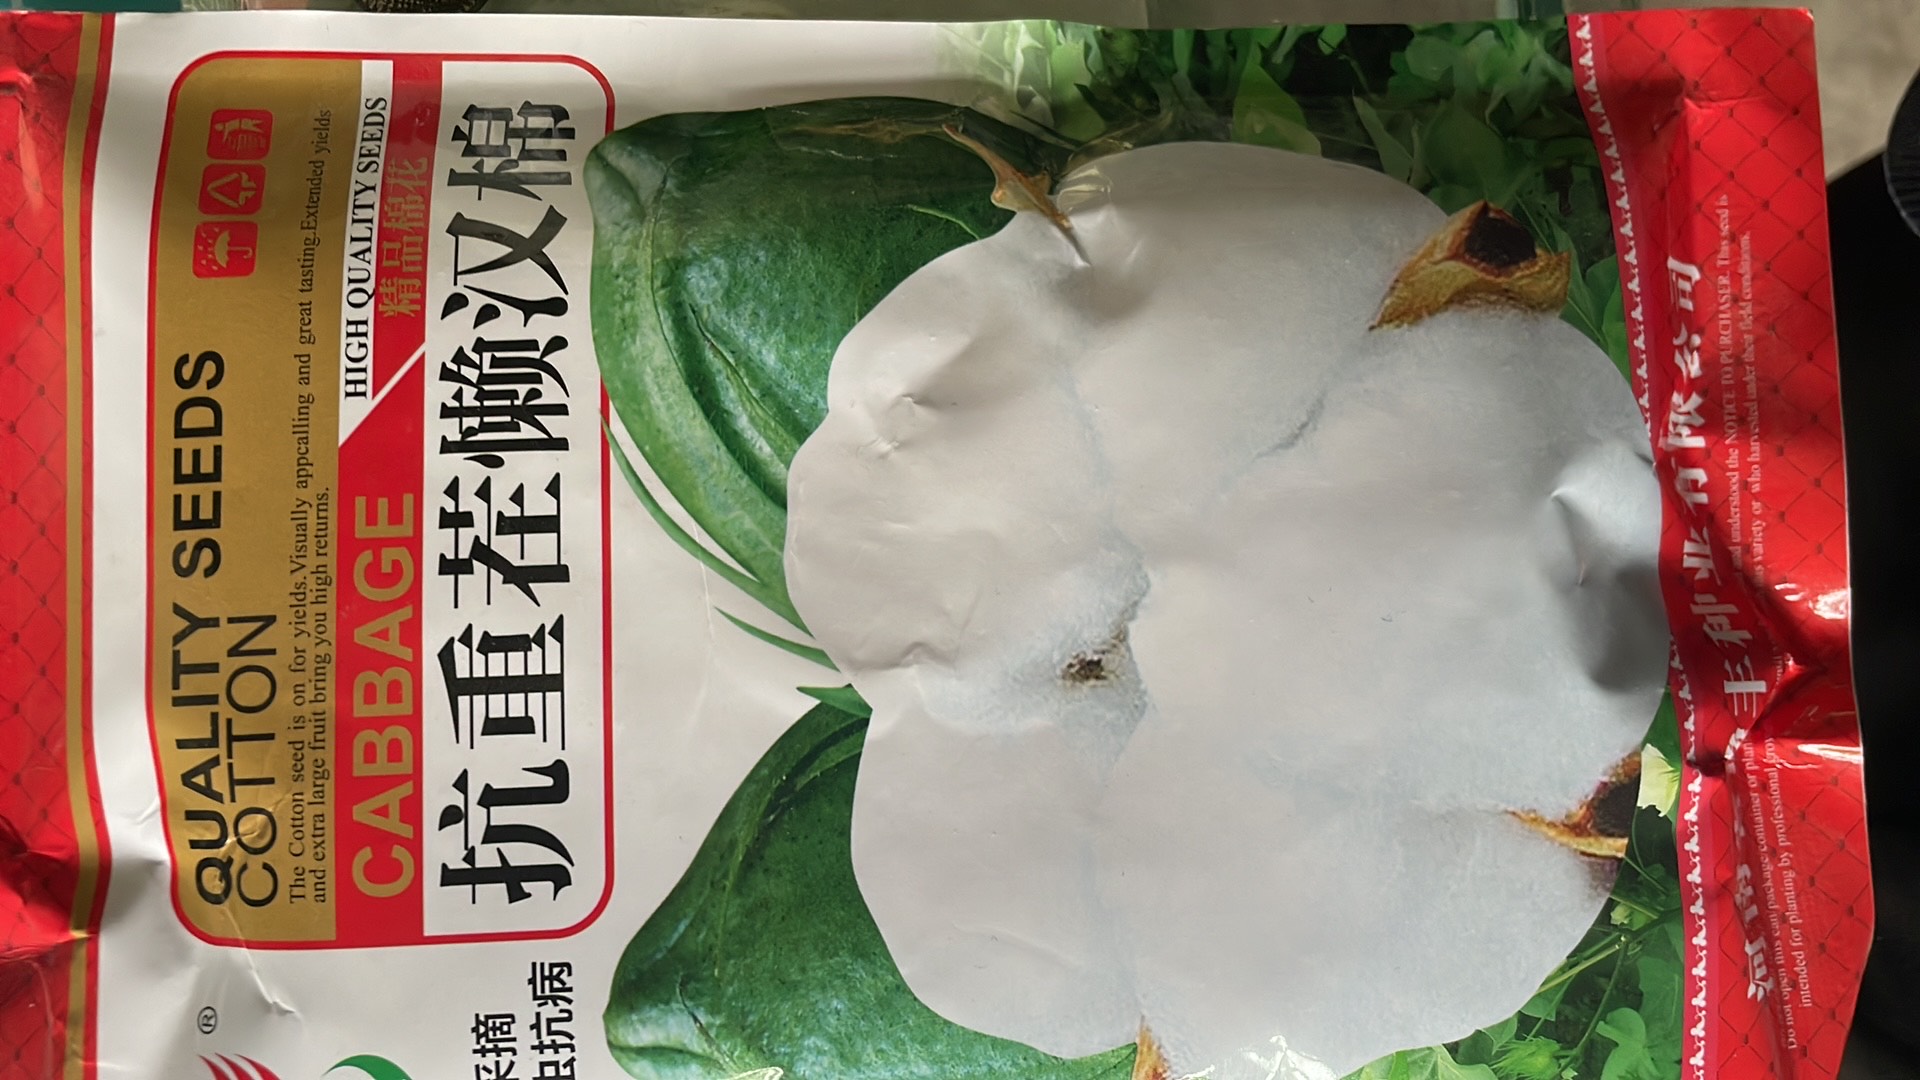 夏邑县棉花种子 抗病虫，大桃，更省工，